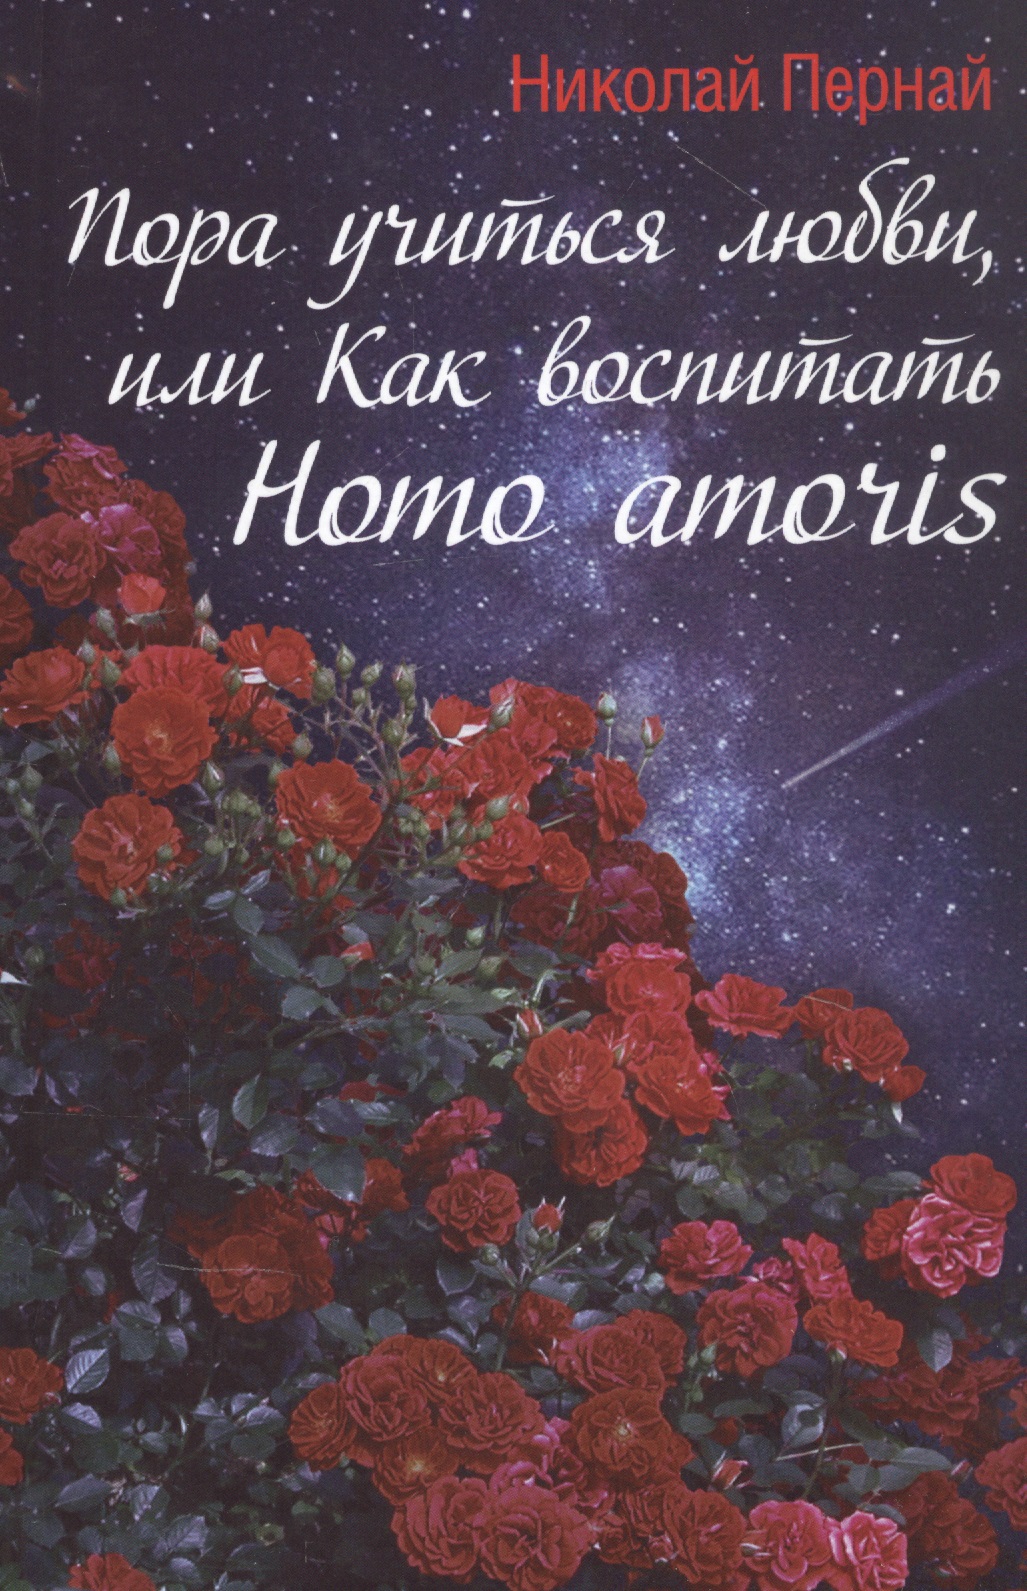 Пора учиться любви, или Как воспитать Homo amoris пора учиться любви или как воспитать homo amoris пернай н в